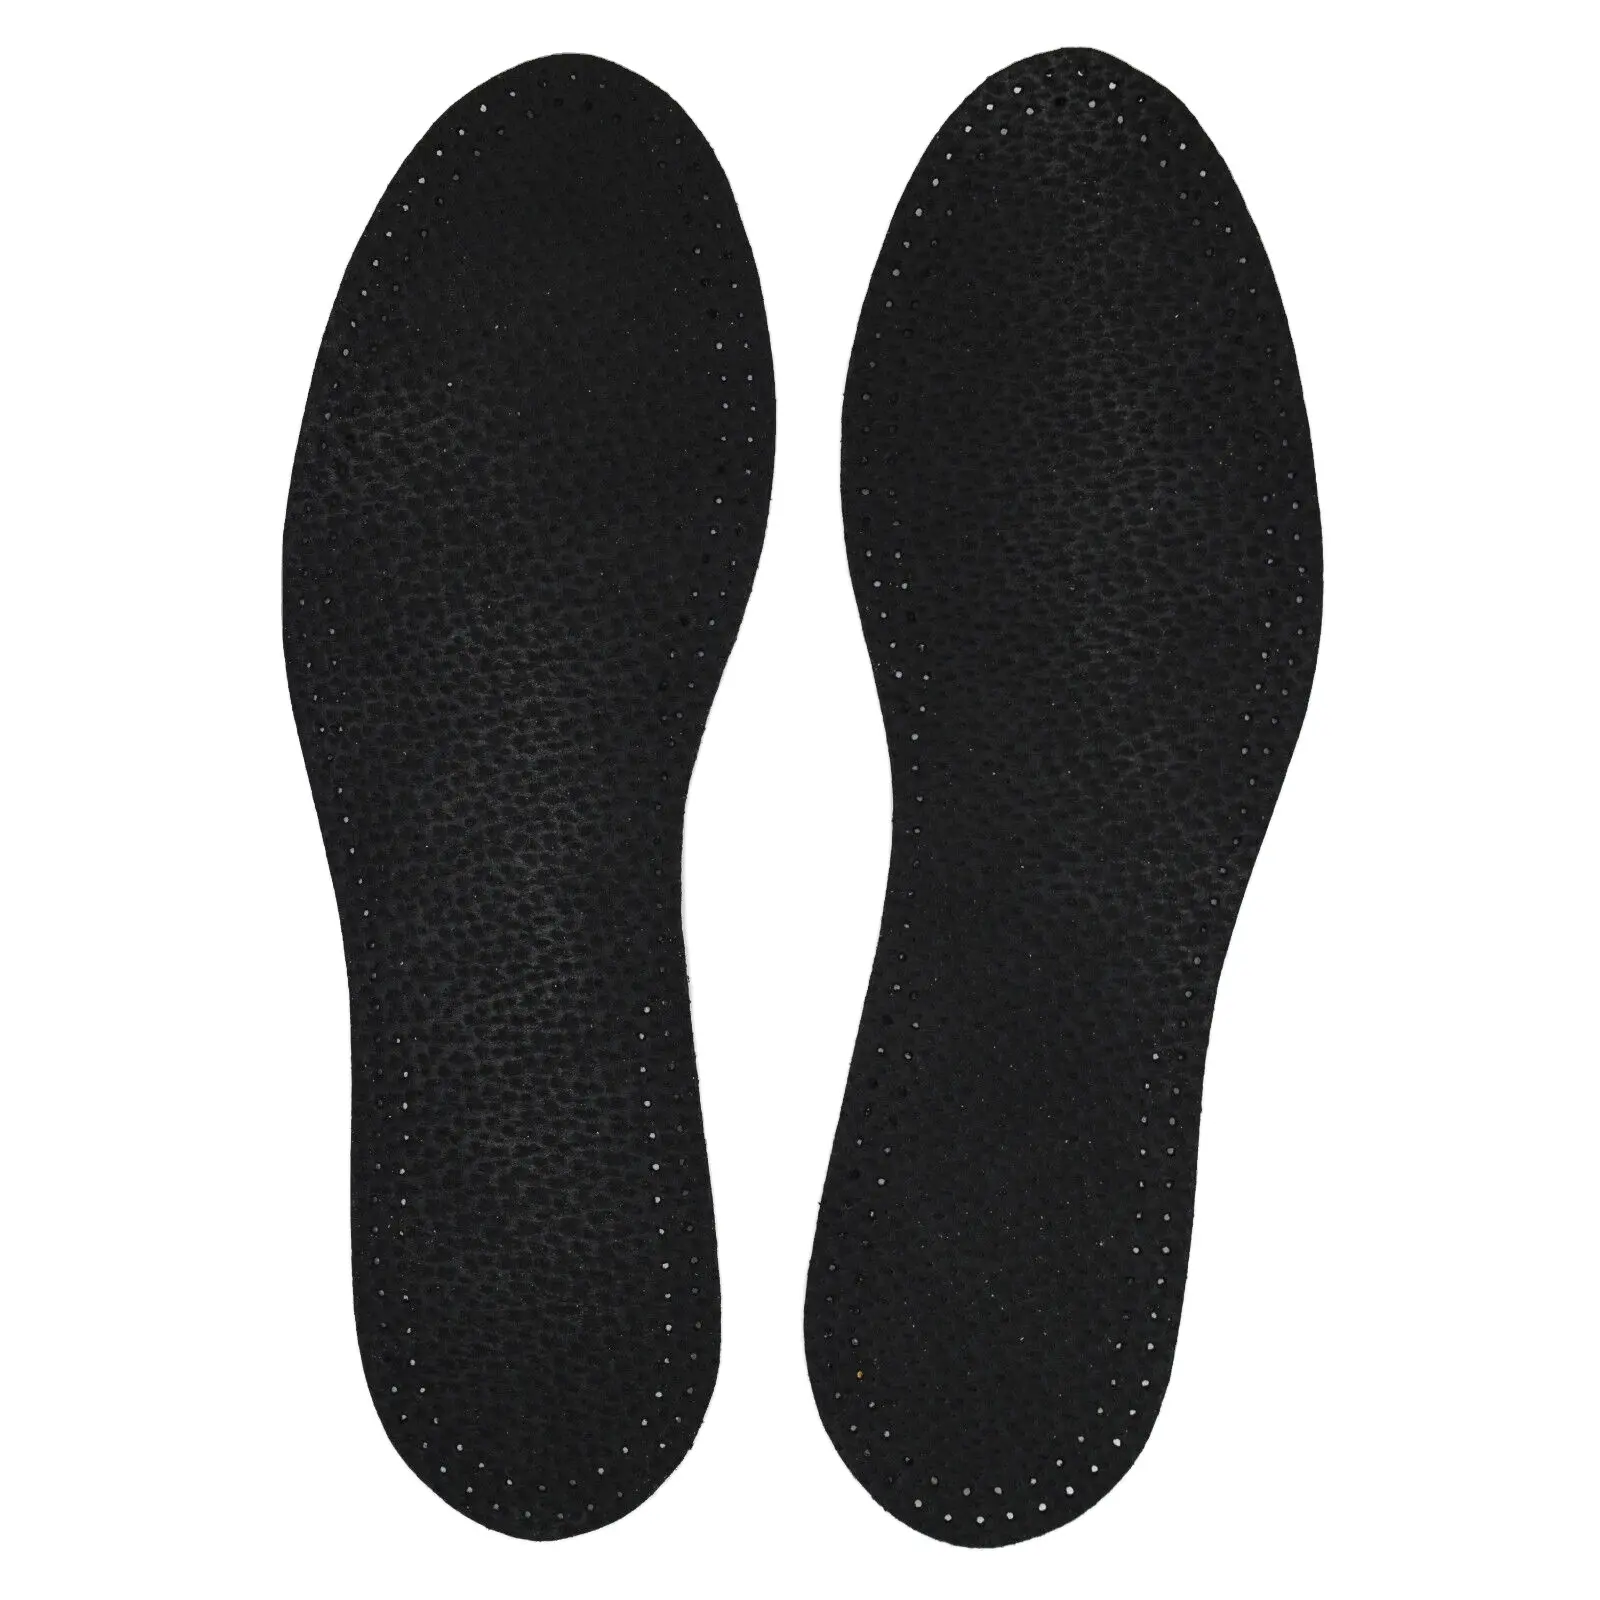 グレード素材で調整可能な靴底オルソ痛みを和らげるプラス素材と利用可能なすべてのサイズのカスタマイズ